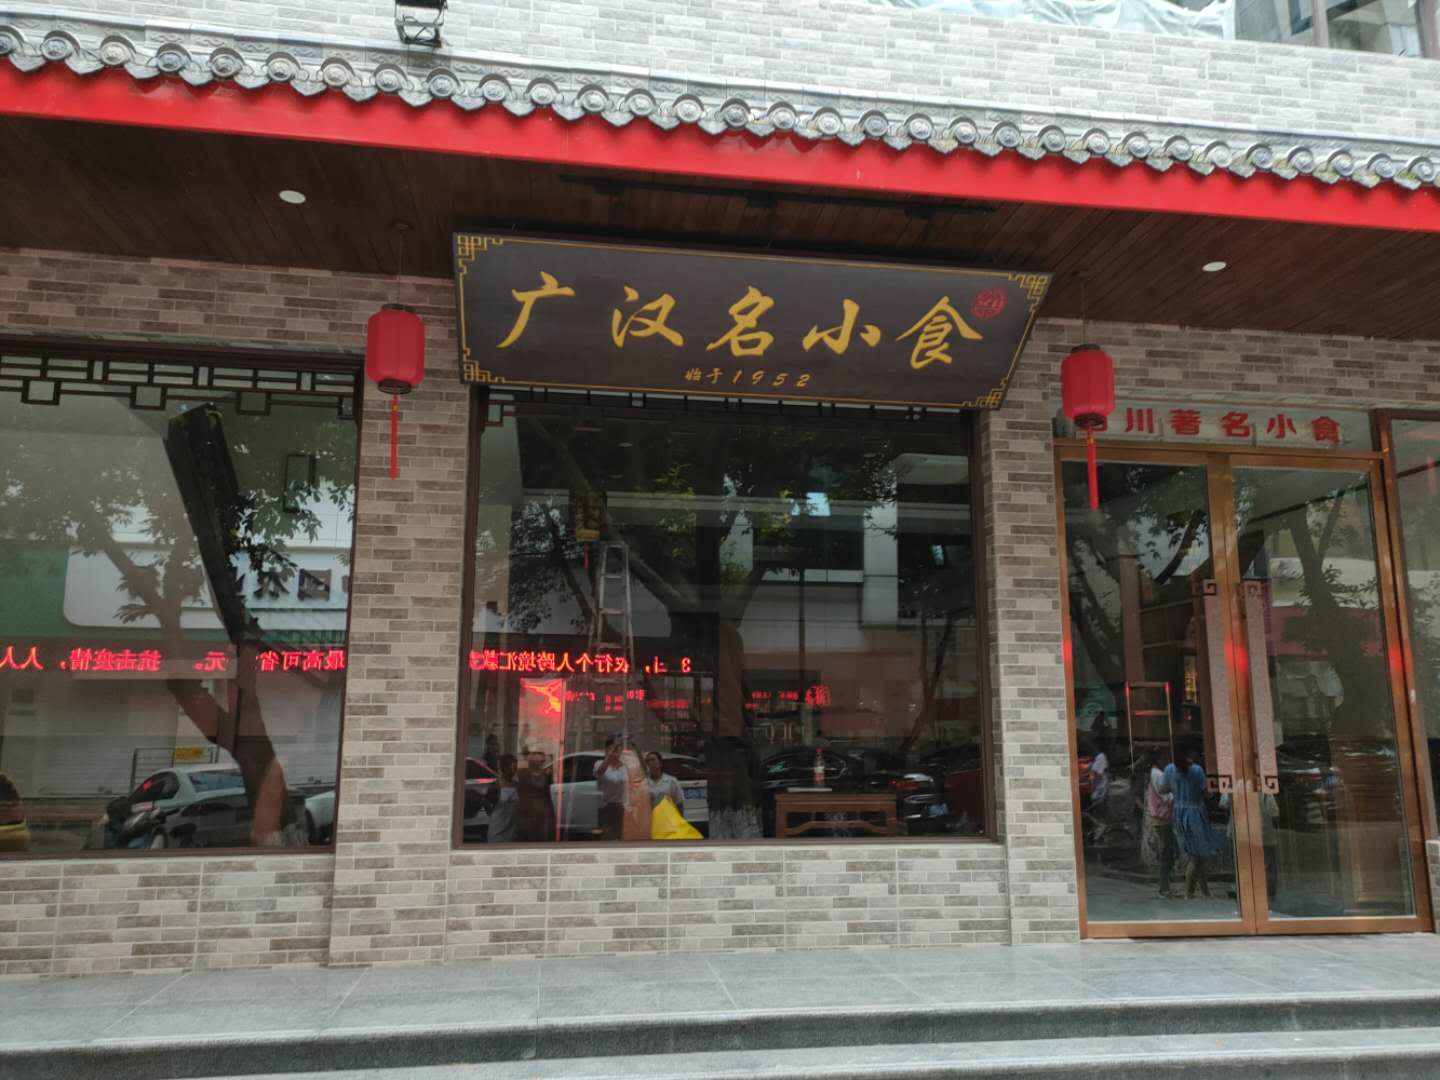 “广汉特色名店”——广汉名小食店